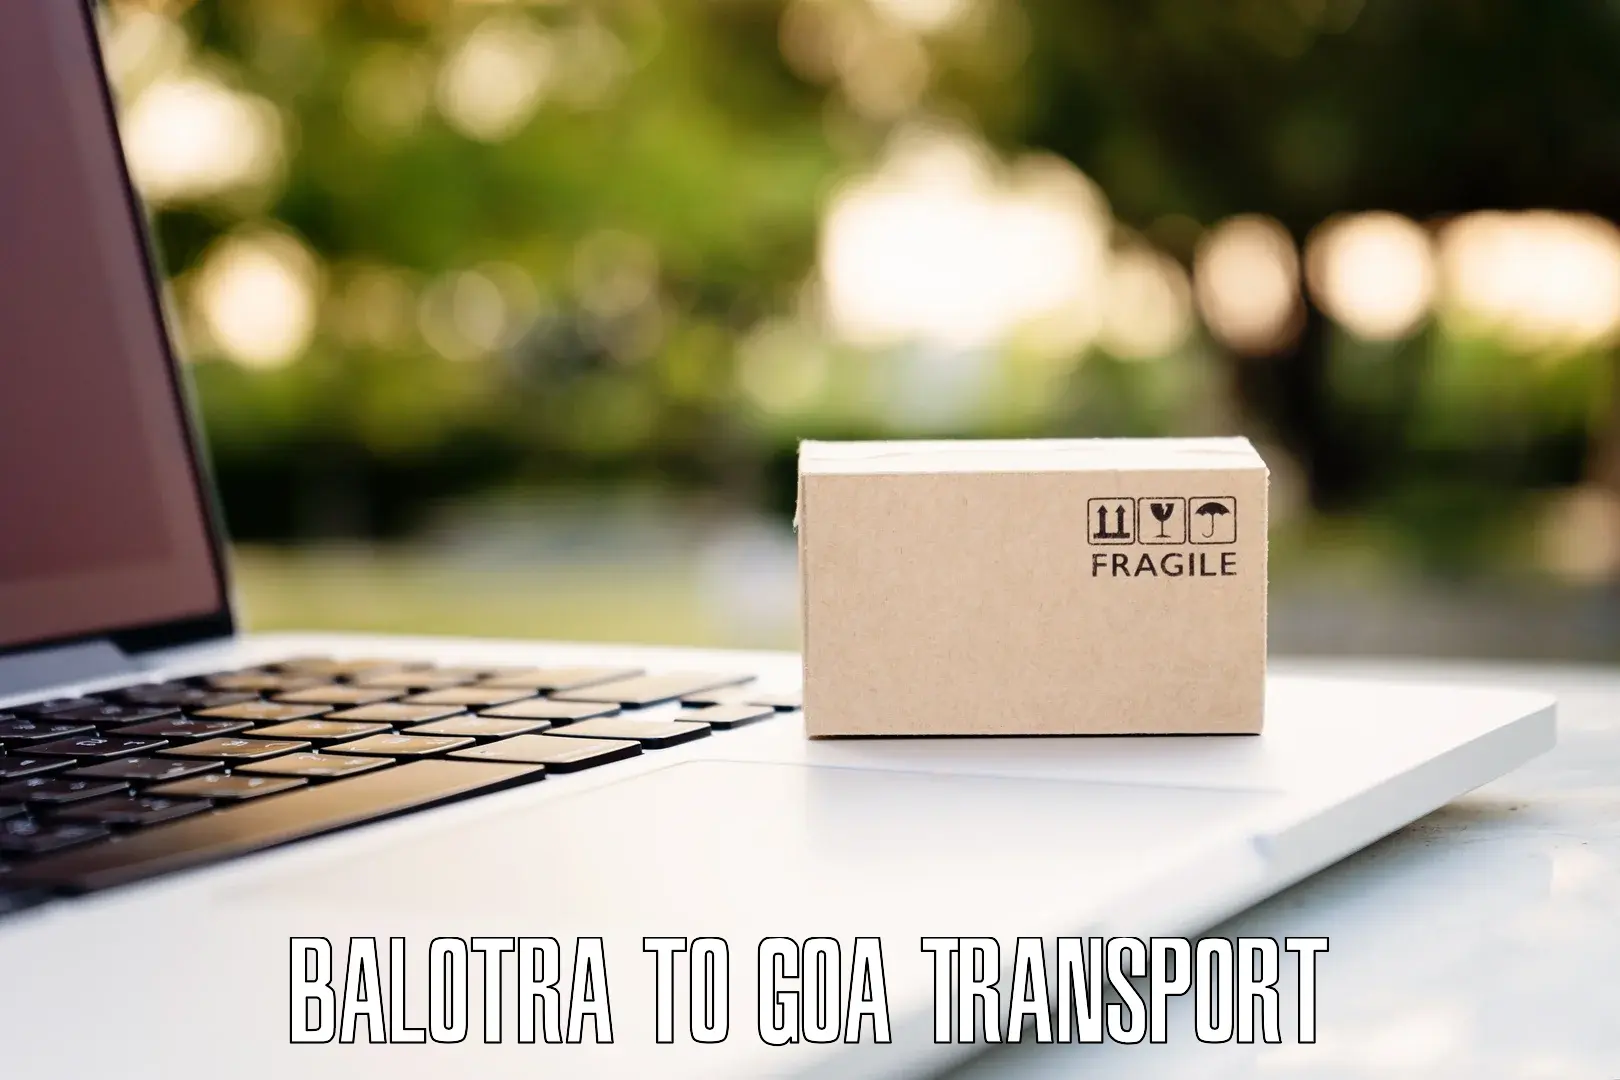 Commercial transport service in Balotra to Vasco da Gama